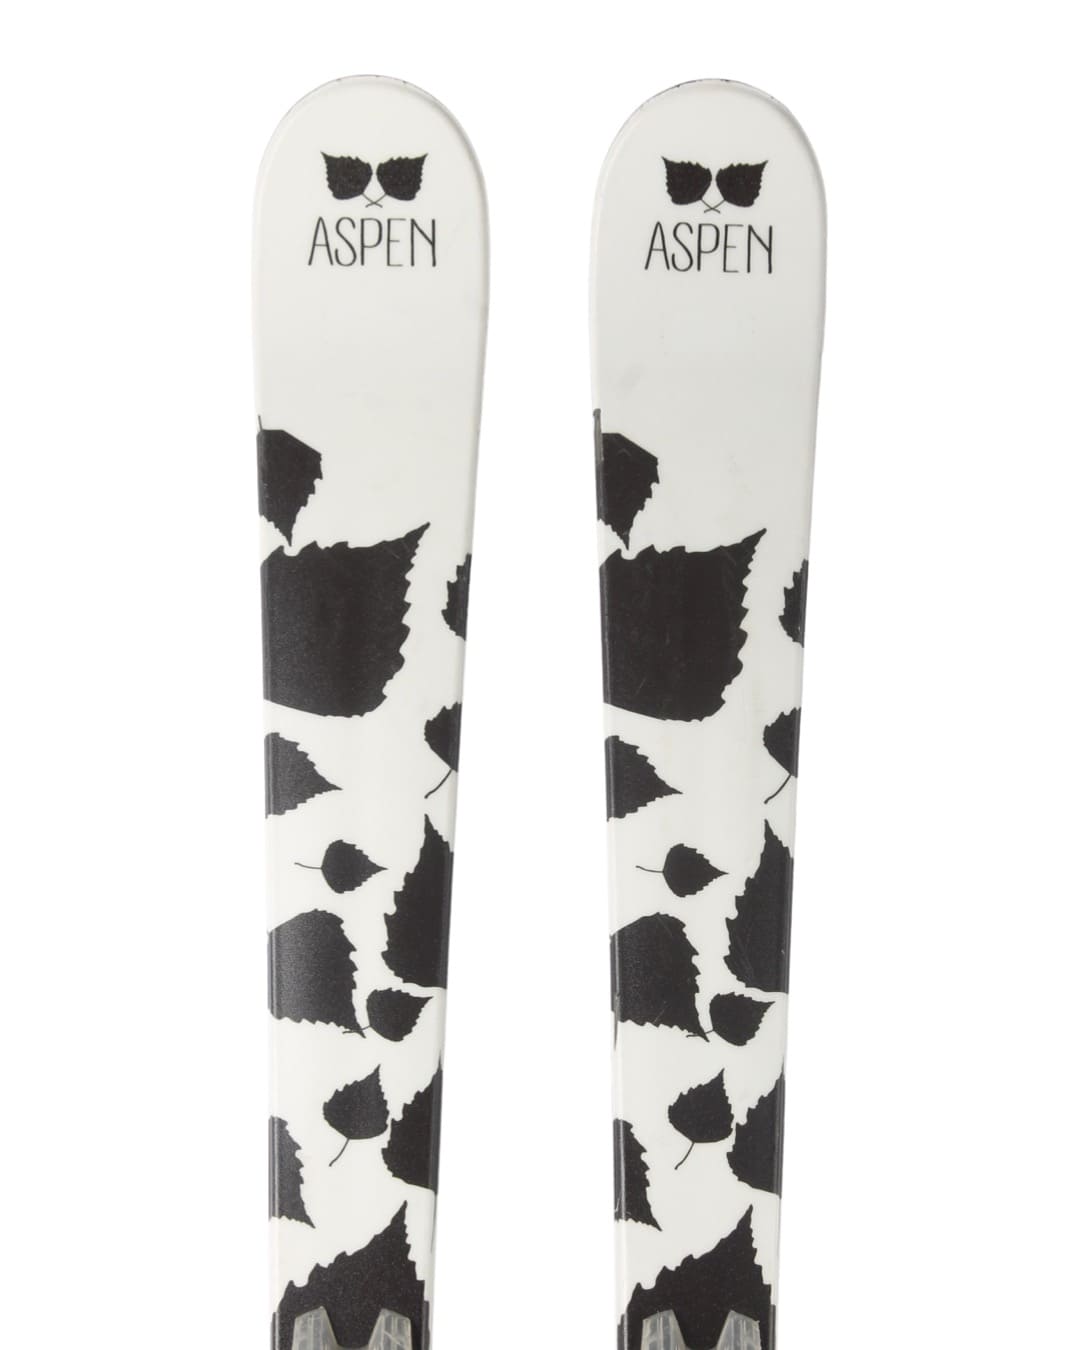 Ski - Aspen Leaves - 1199 kr